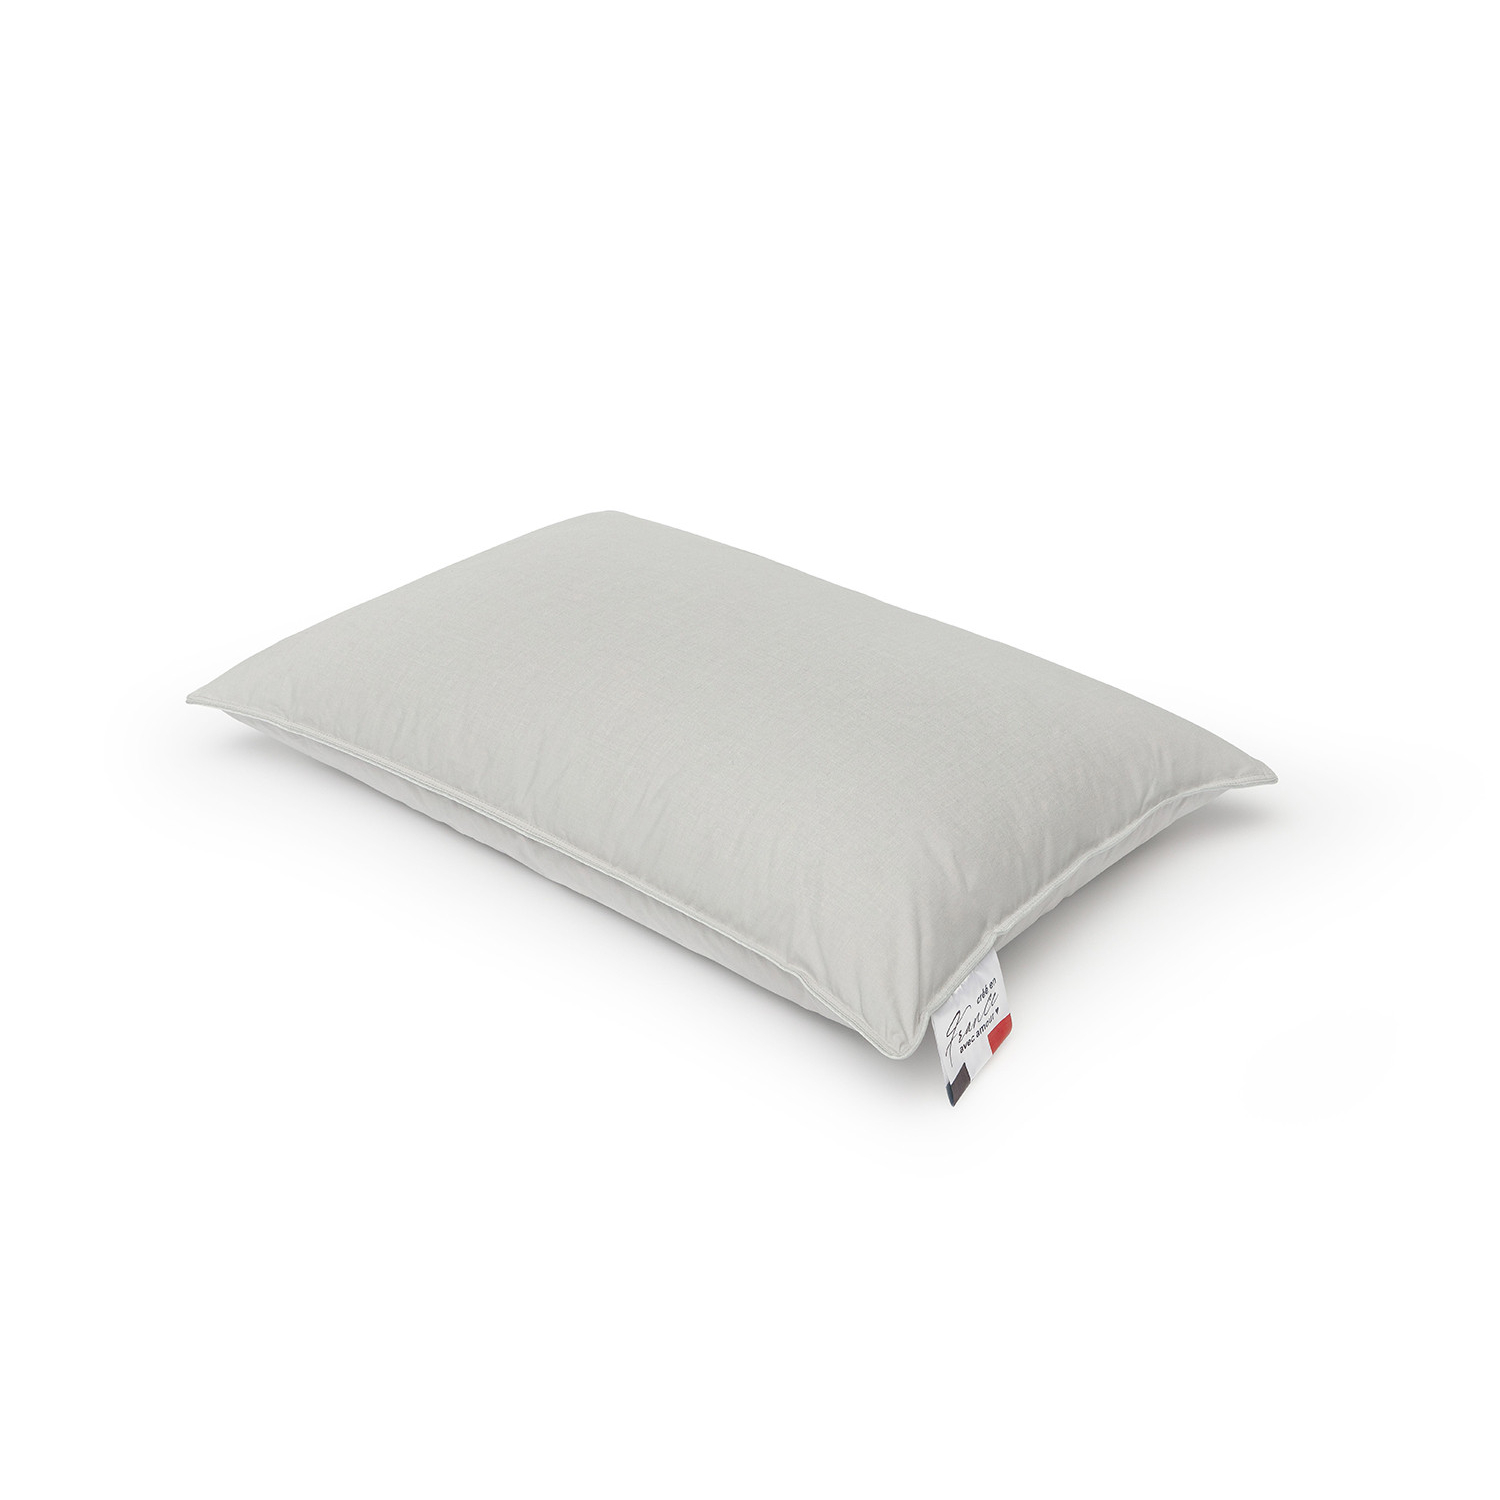 Пуховая подушка Marc Anri Bretagne серая 50х70 см (МН1076), цвет серый - фото 1